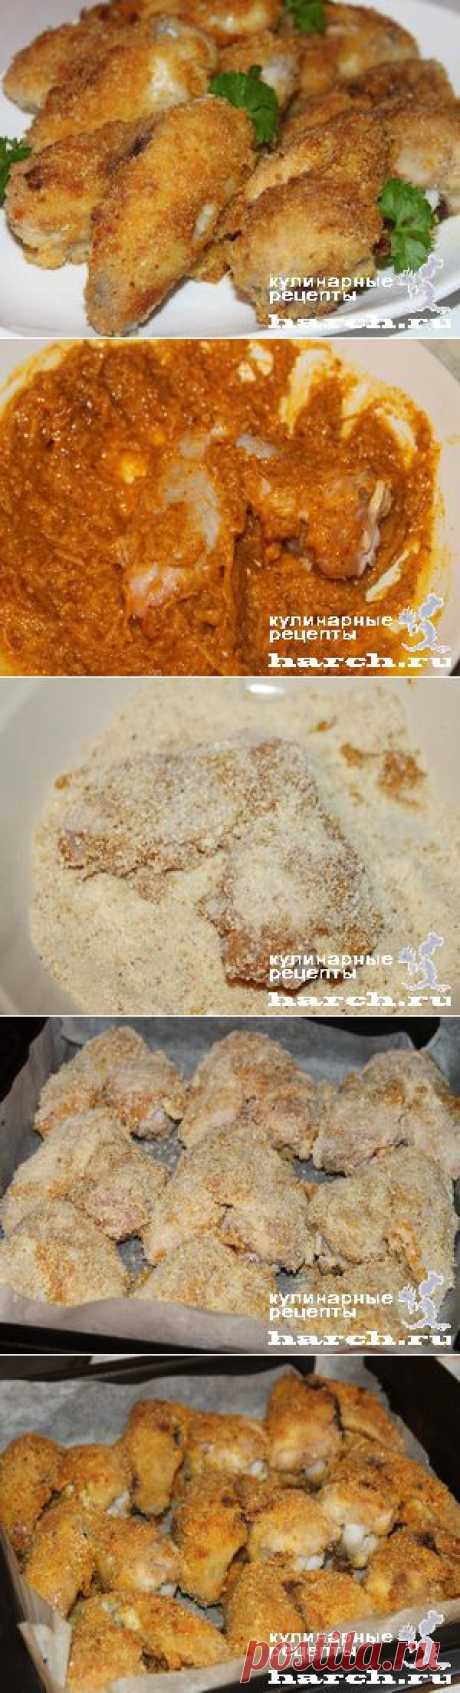 Куриные крылышки в сырно-сухарной корочке | Харч.ру - рецепты для любителей вкусно поесть